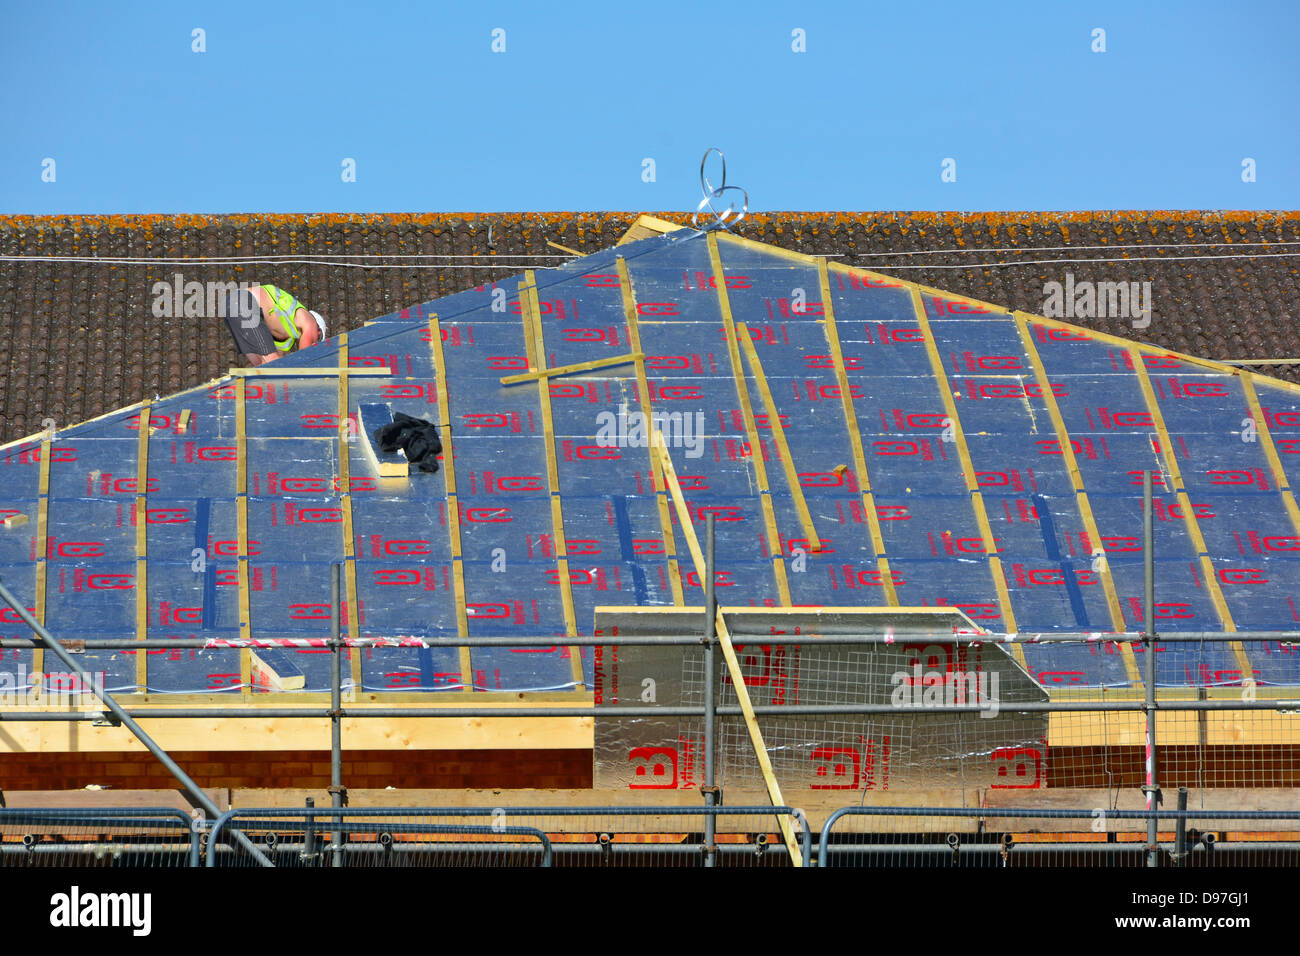 Échafaudage sur le chantier de construction et ouvrier de fixation avec support en feuille Isolation en mousse à économie d'énergie sur le toit incliné de l'extension scolaire Essex Angleterre Royaume-Uni Banque D'Images